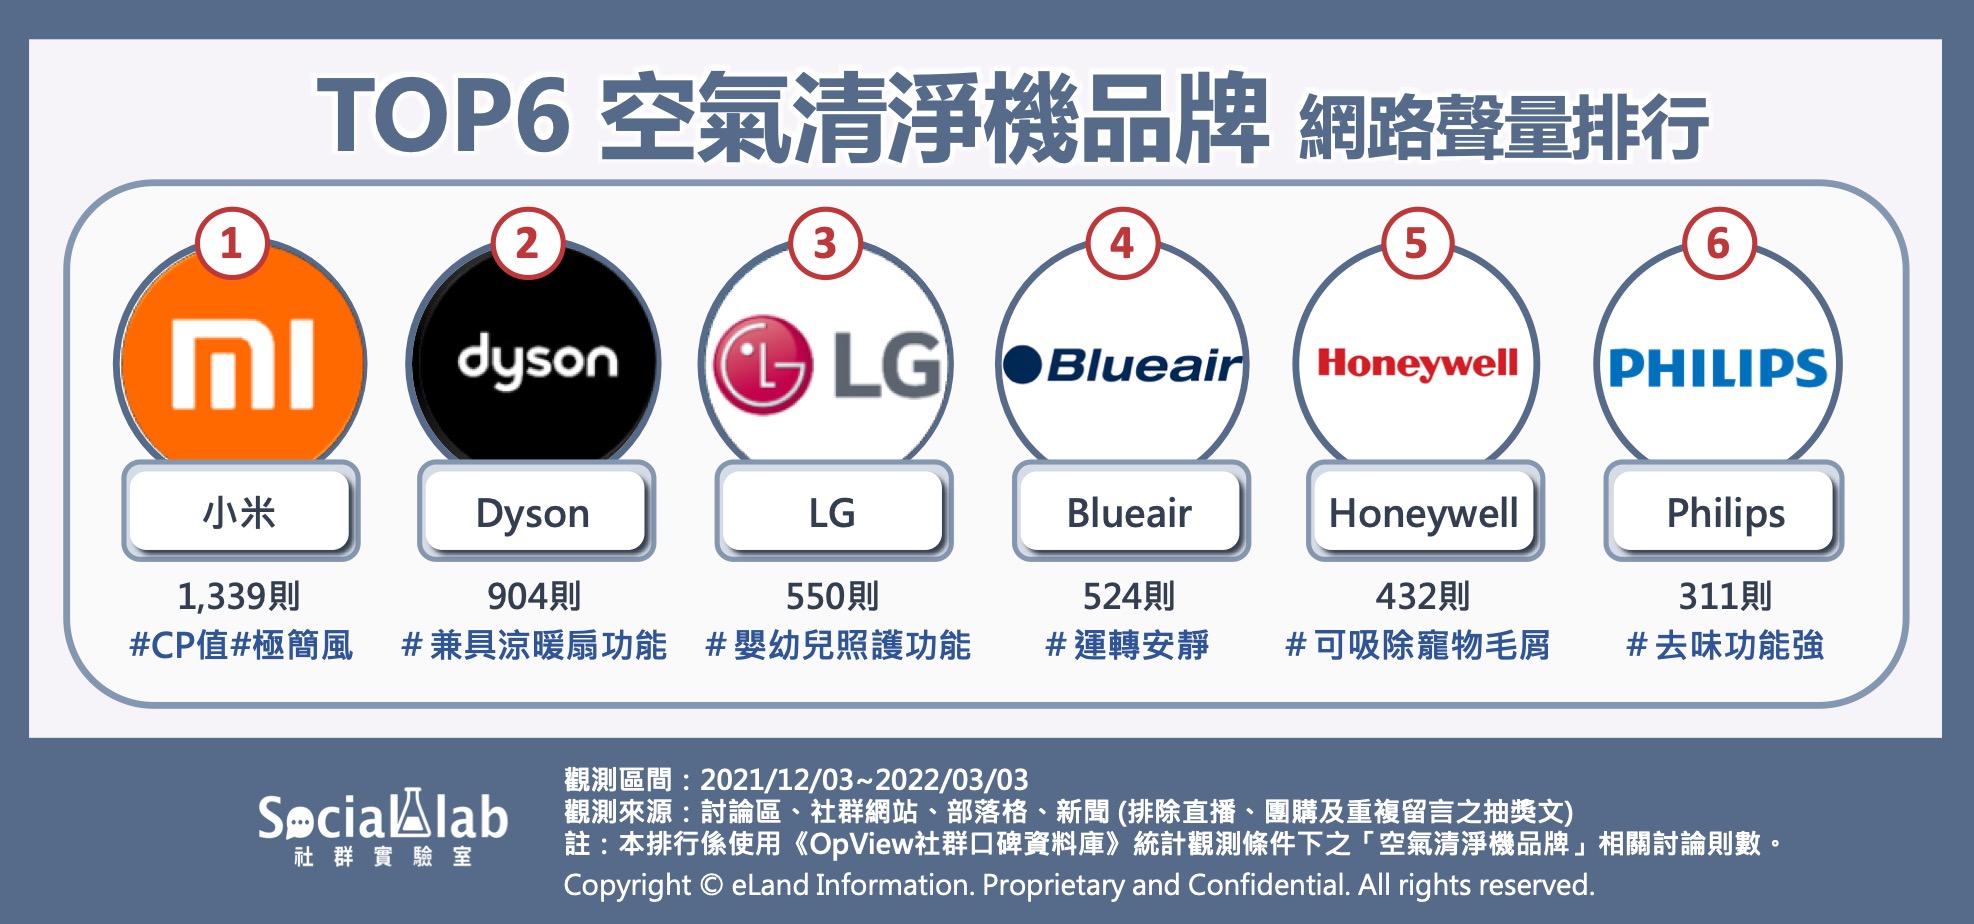  TOP6 空氣清淨機品牌 網路聲量排行